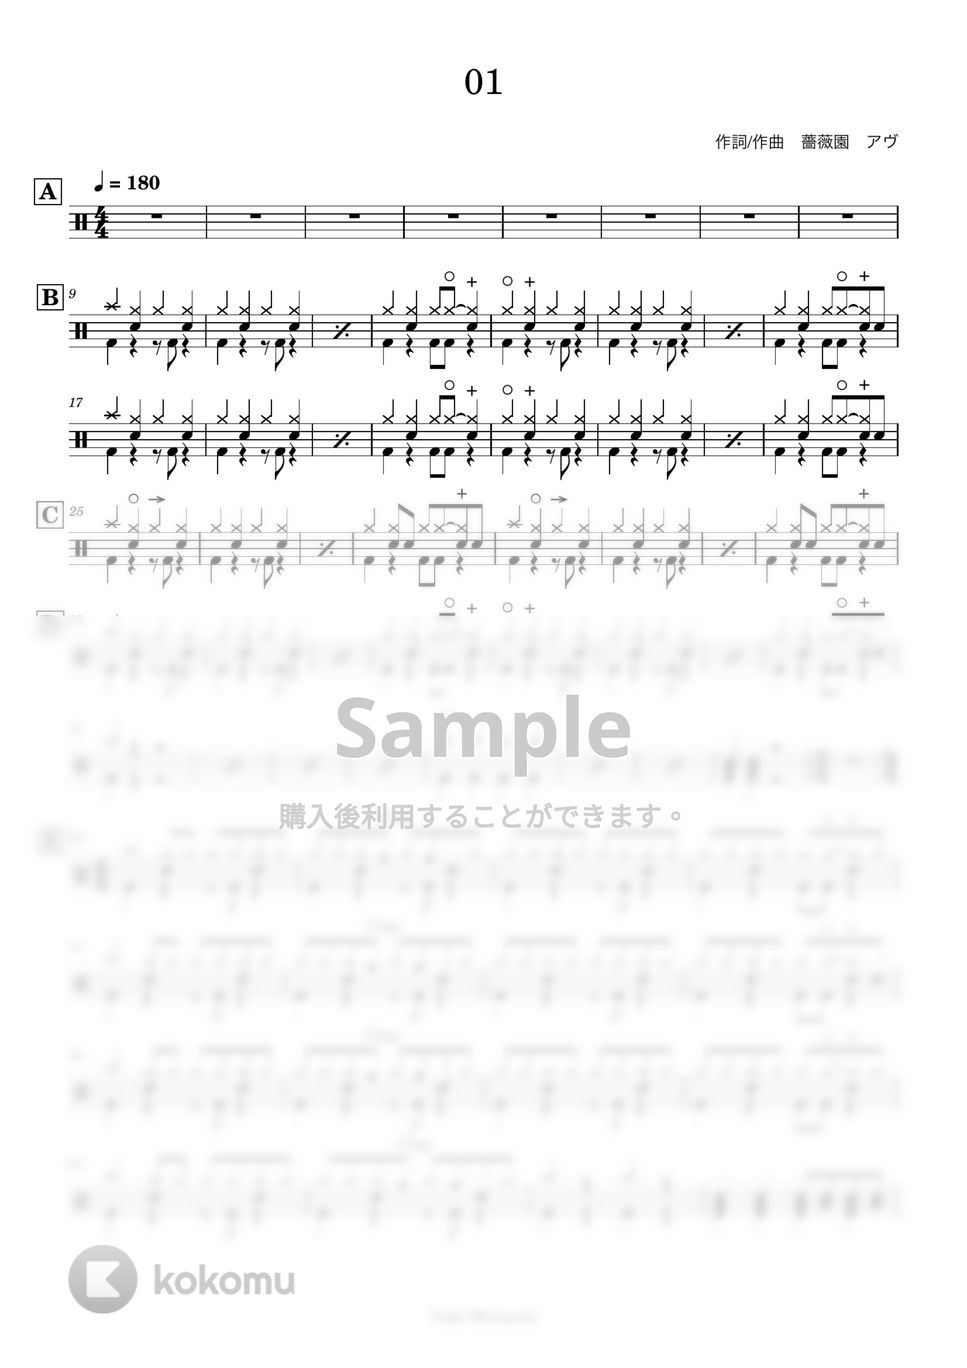 女王蜂 - 【ドラム譜】01【完コピ】 by Taiki Mizumoto